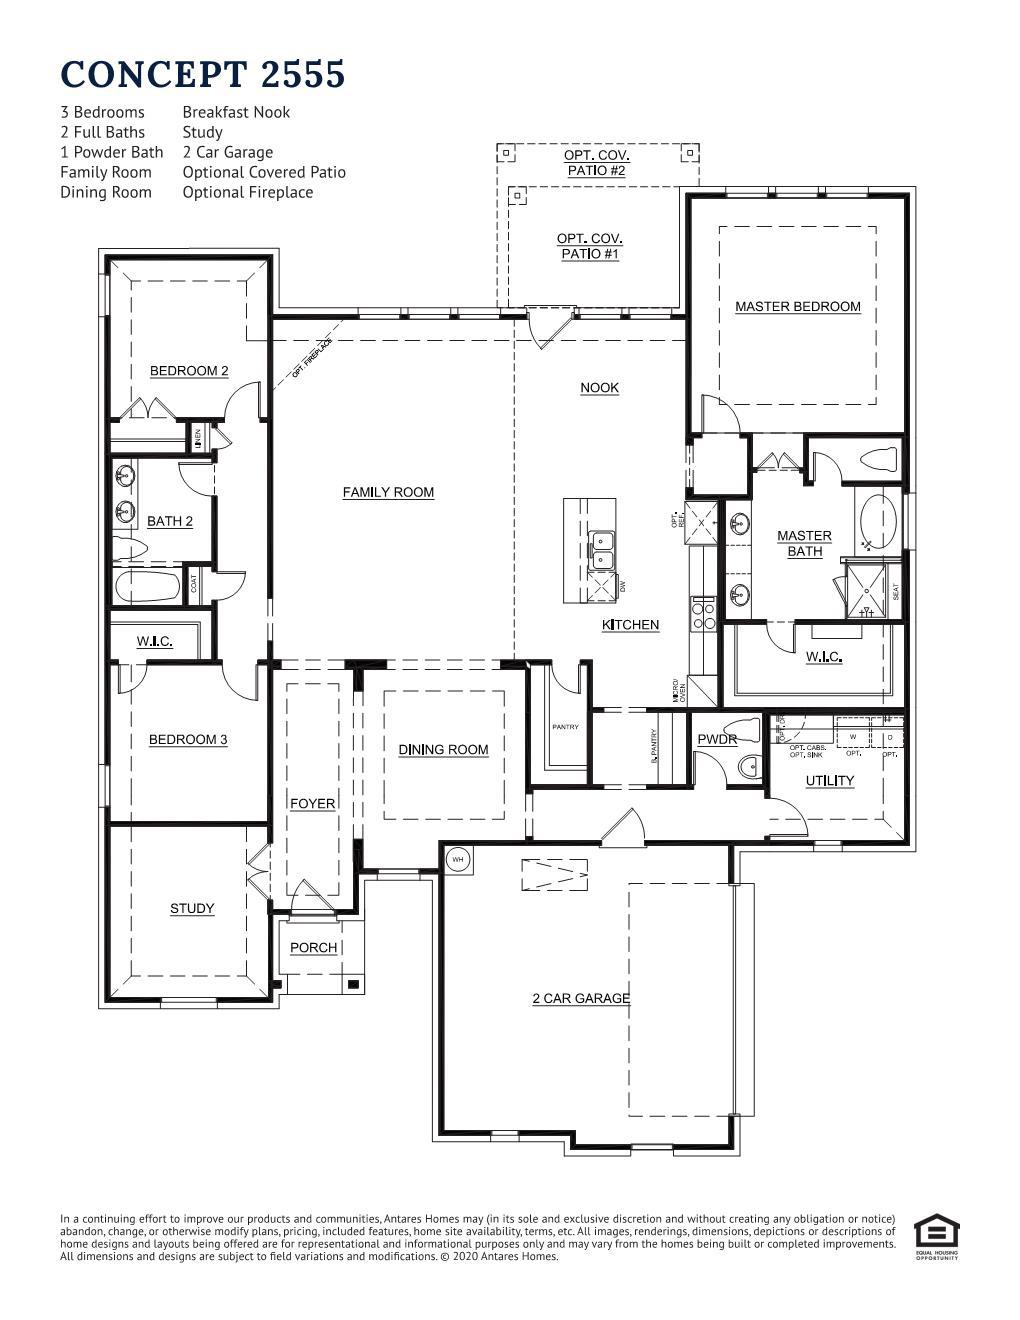 Concept 2555 New Home Floor Plan